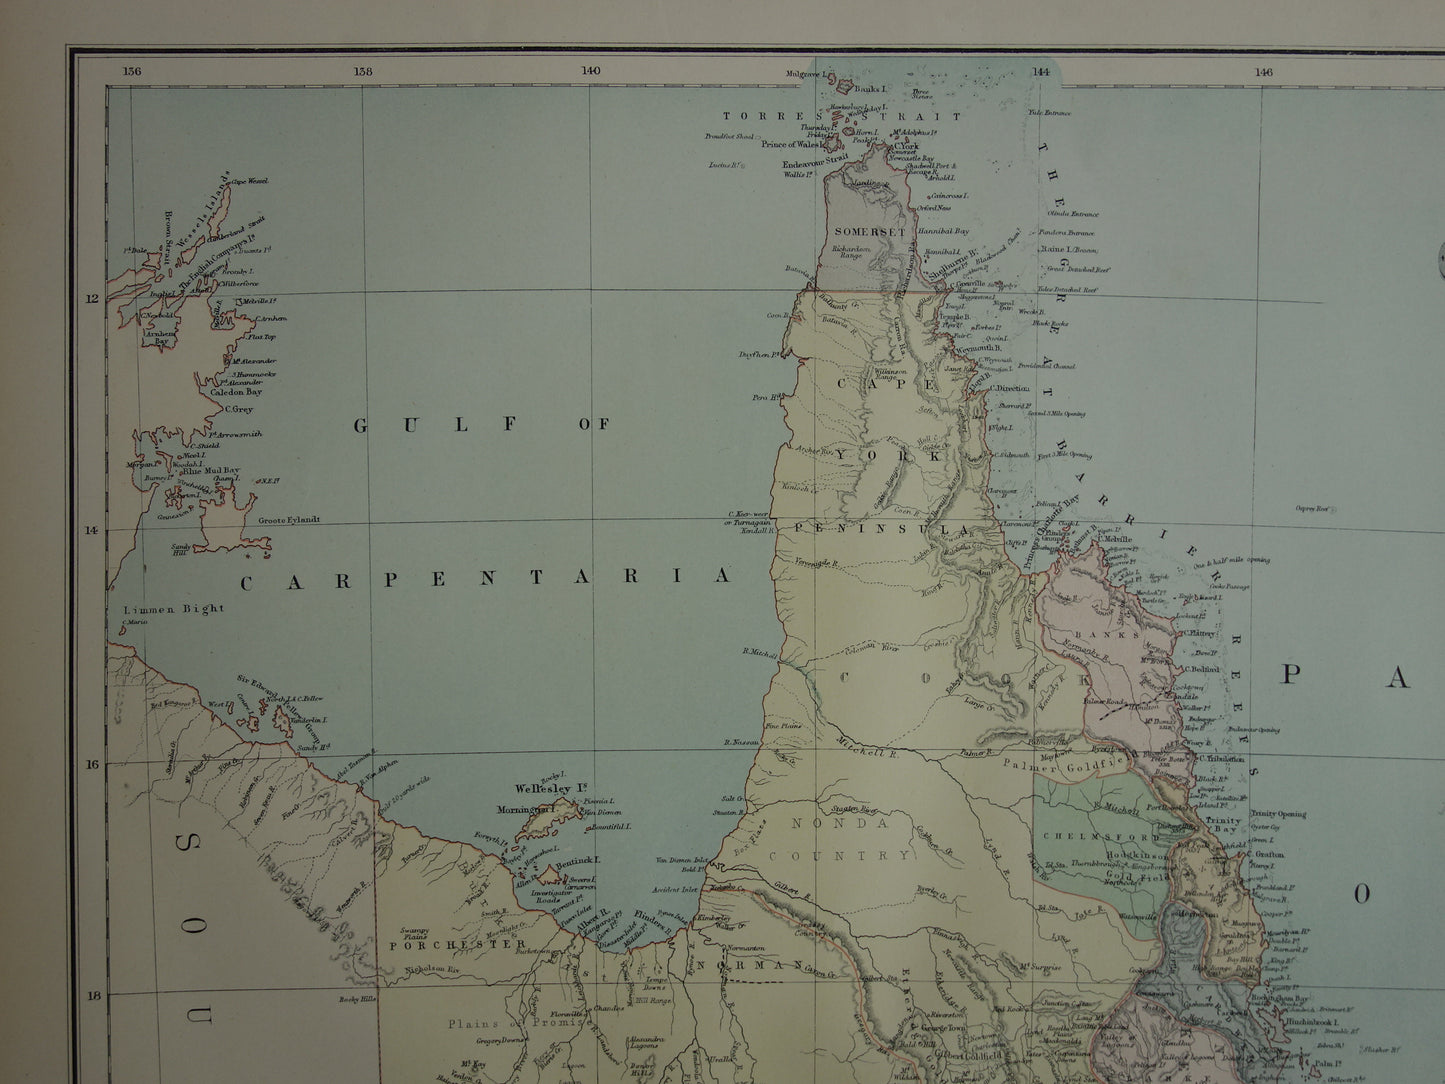 Queensland Australië oude kaart 1890 originele antieke Engelse landkaart Queensland QLD poster